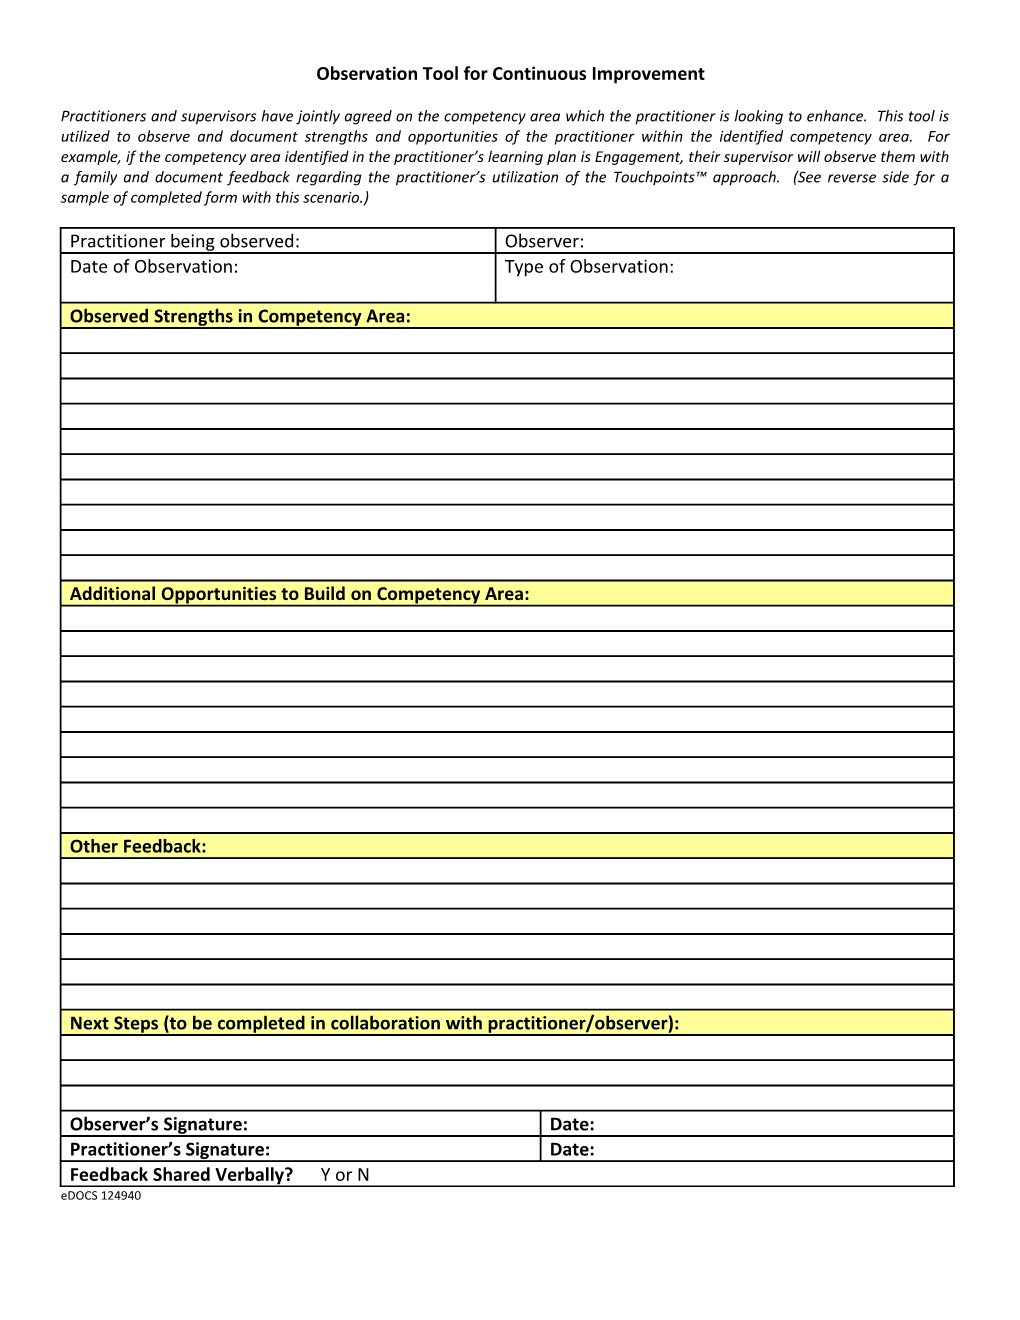 Observation Documentation Form